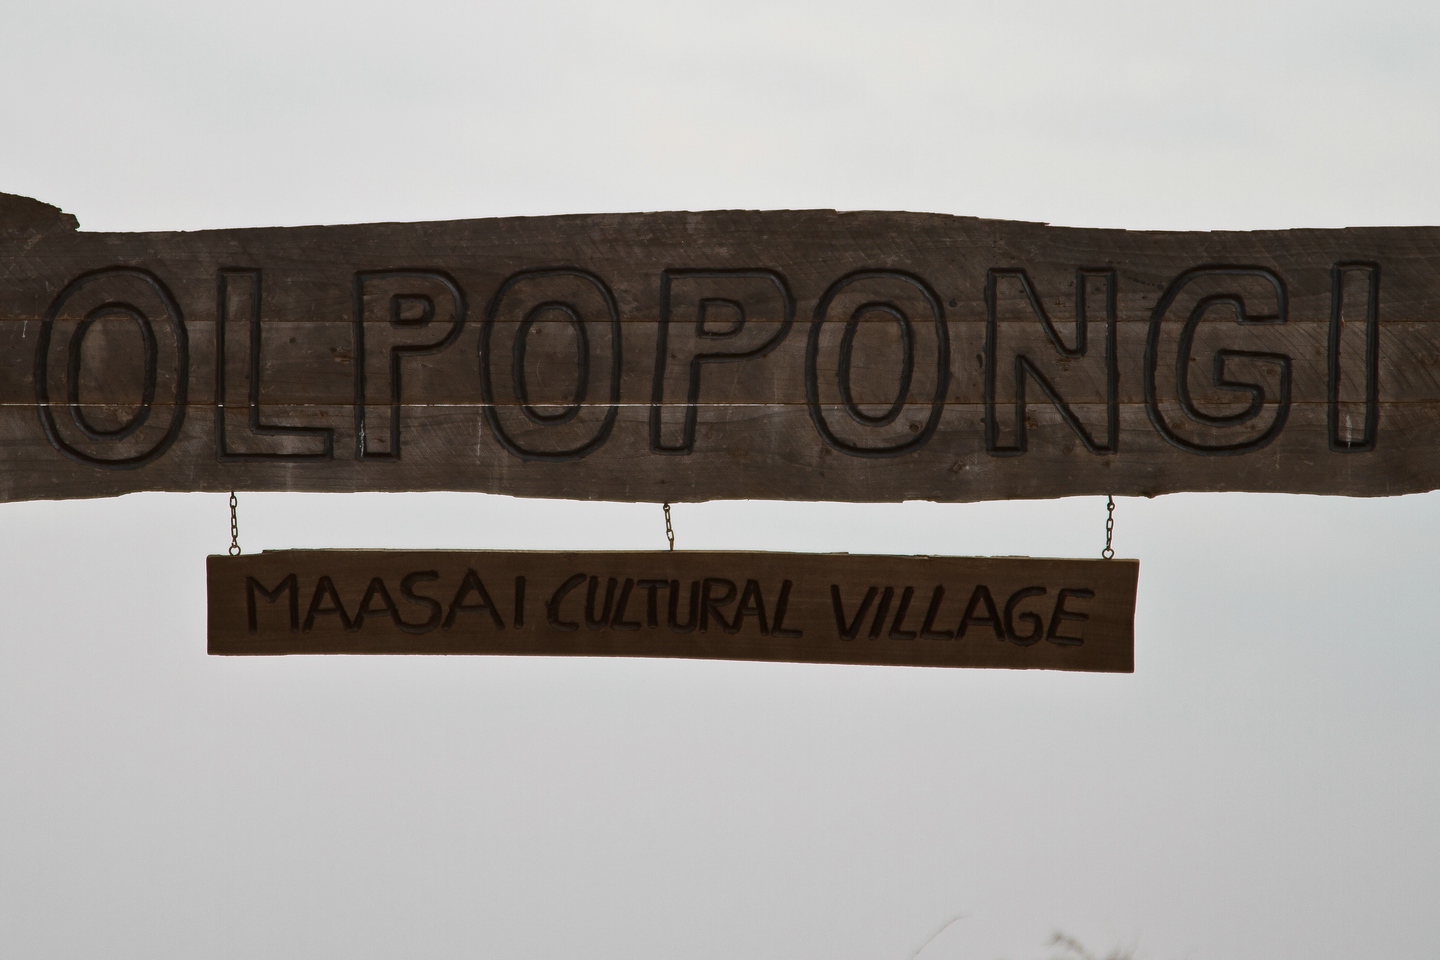 Olpopongi